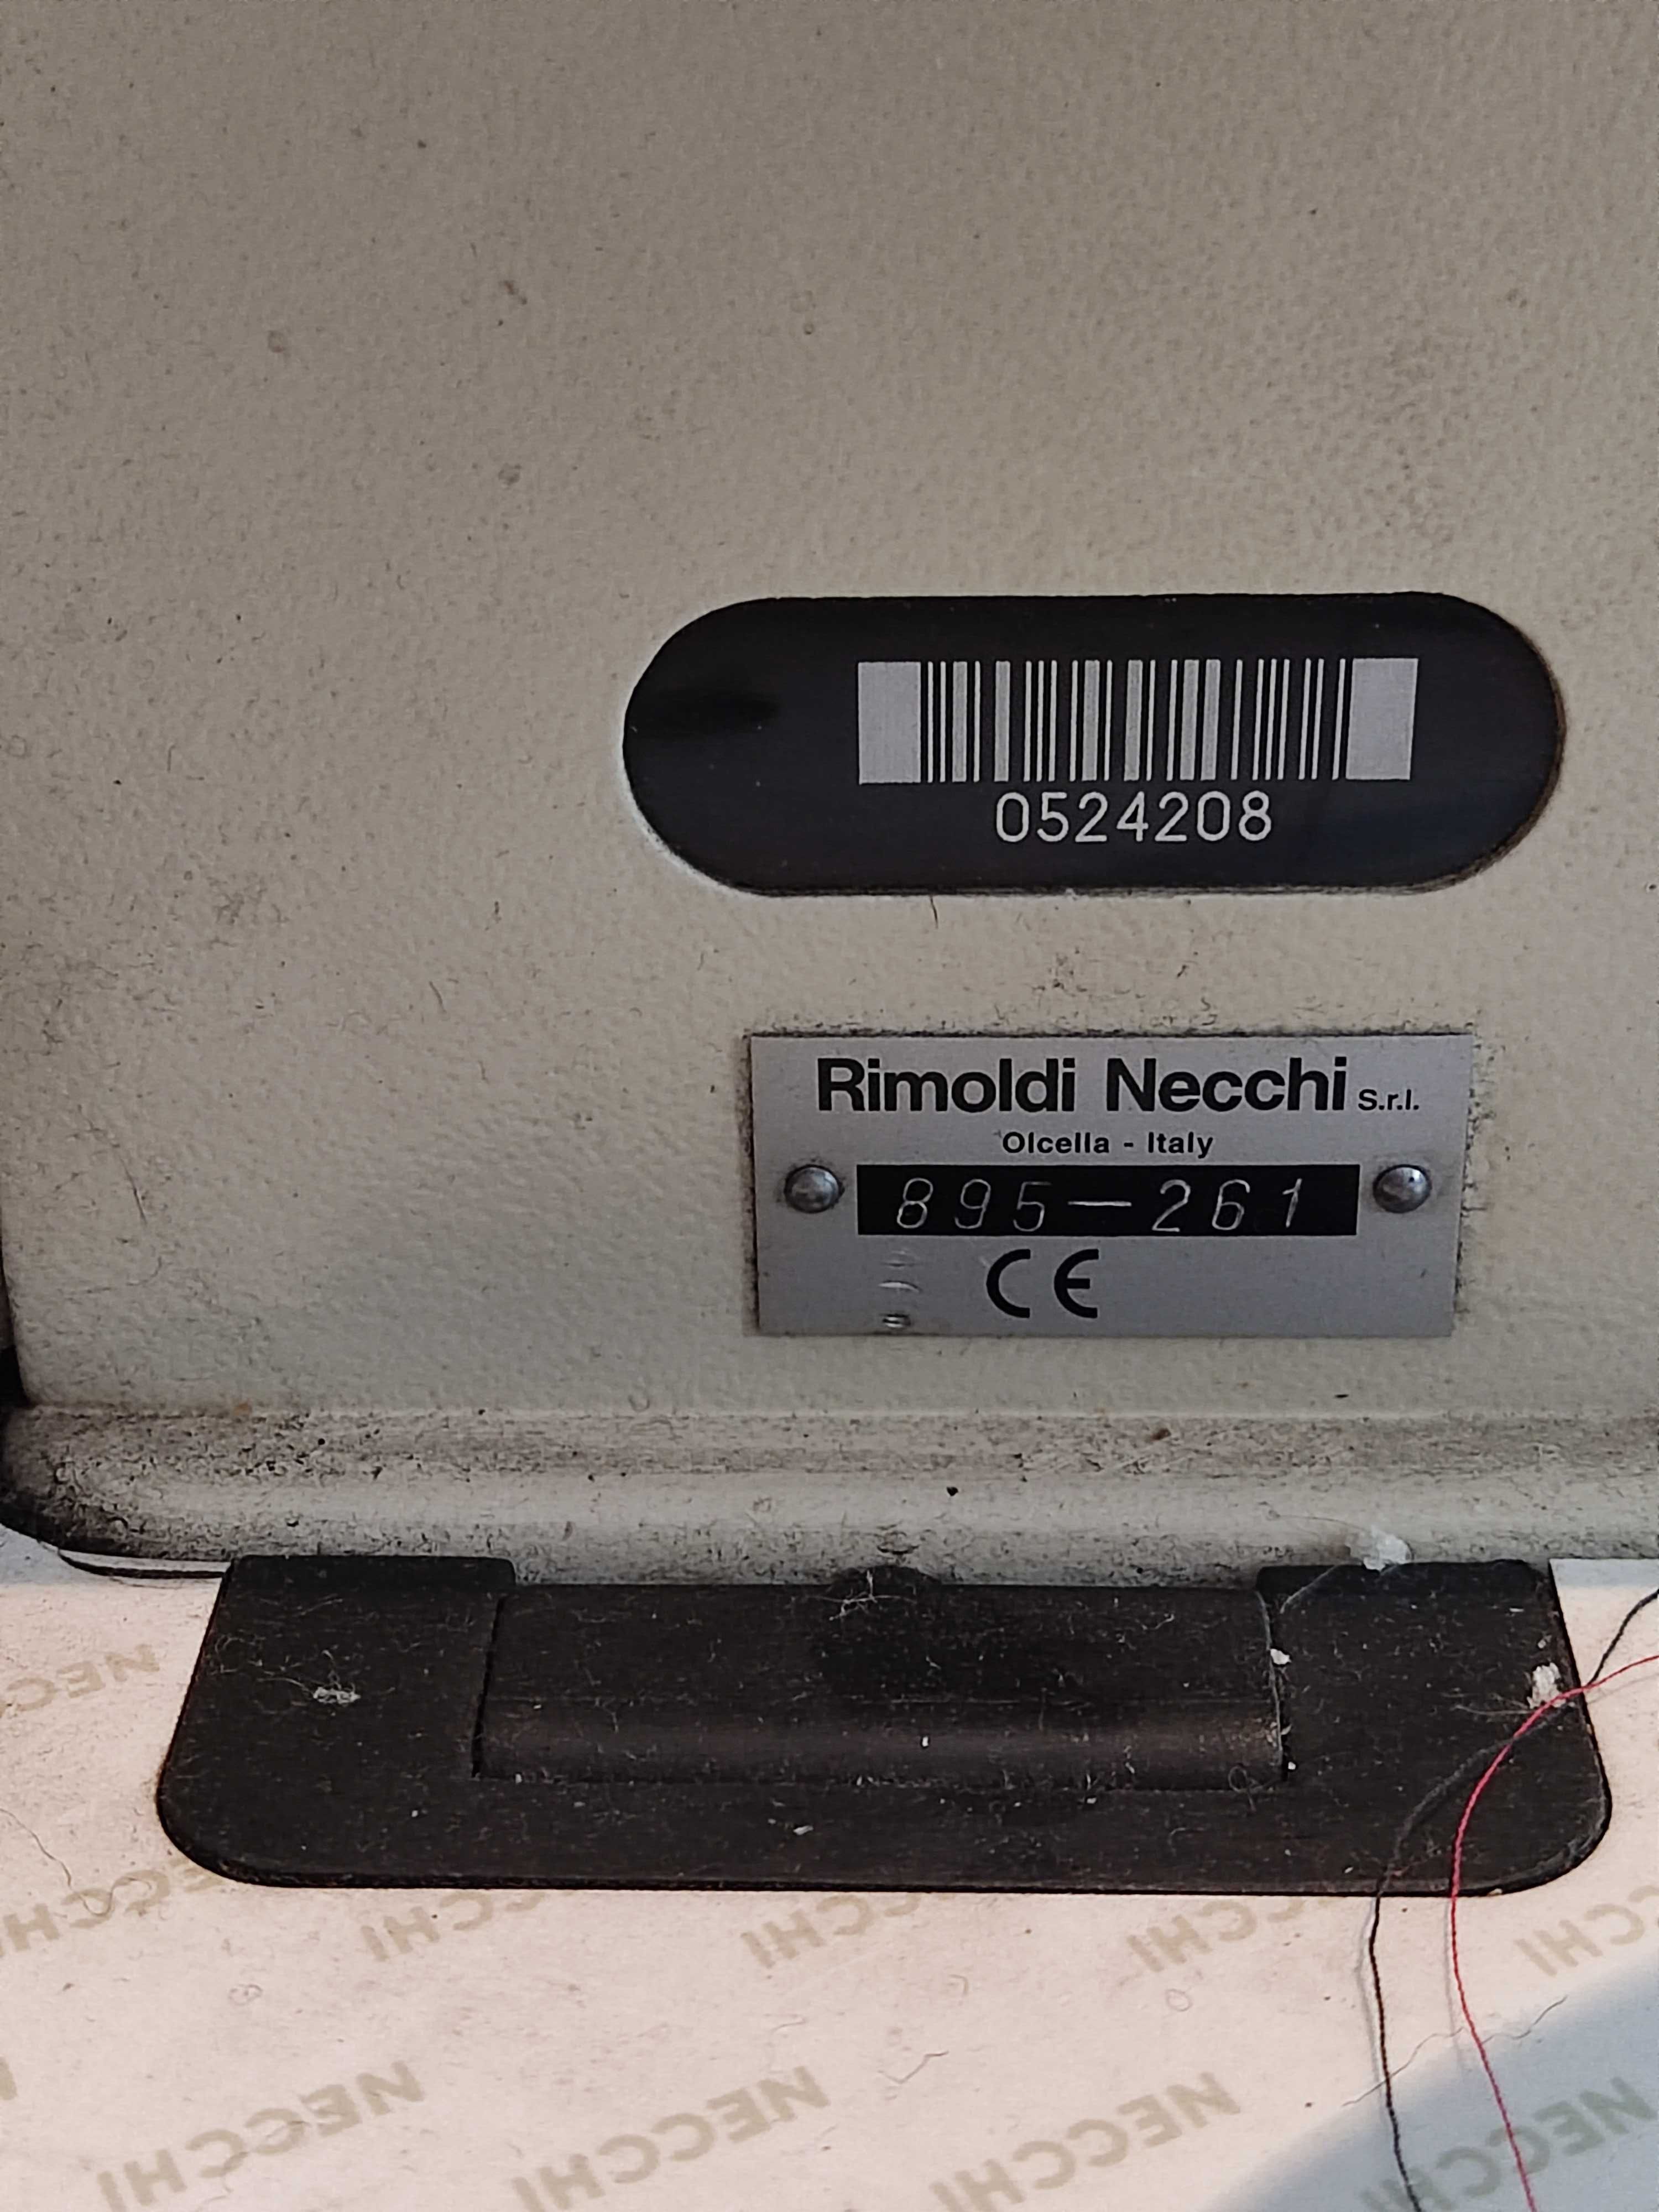 Промышленная швейная машинка Rimoldi Necchi 895-261